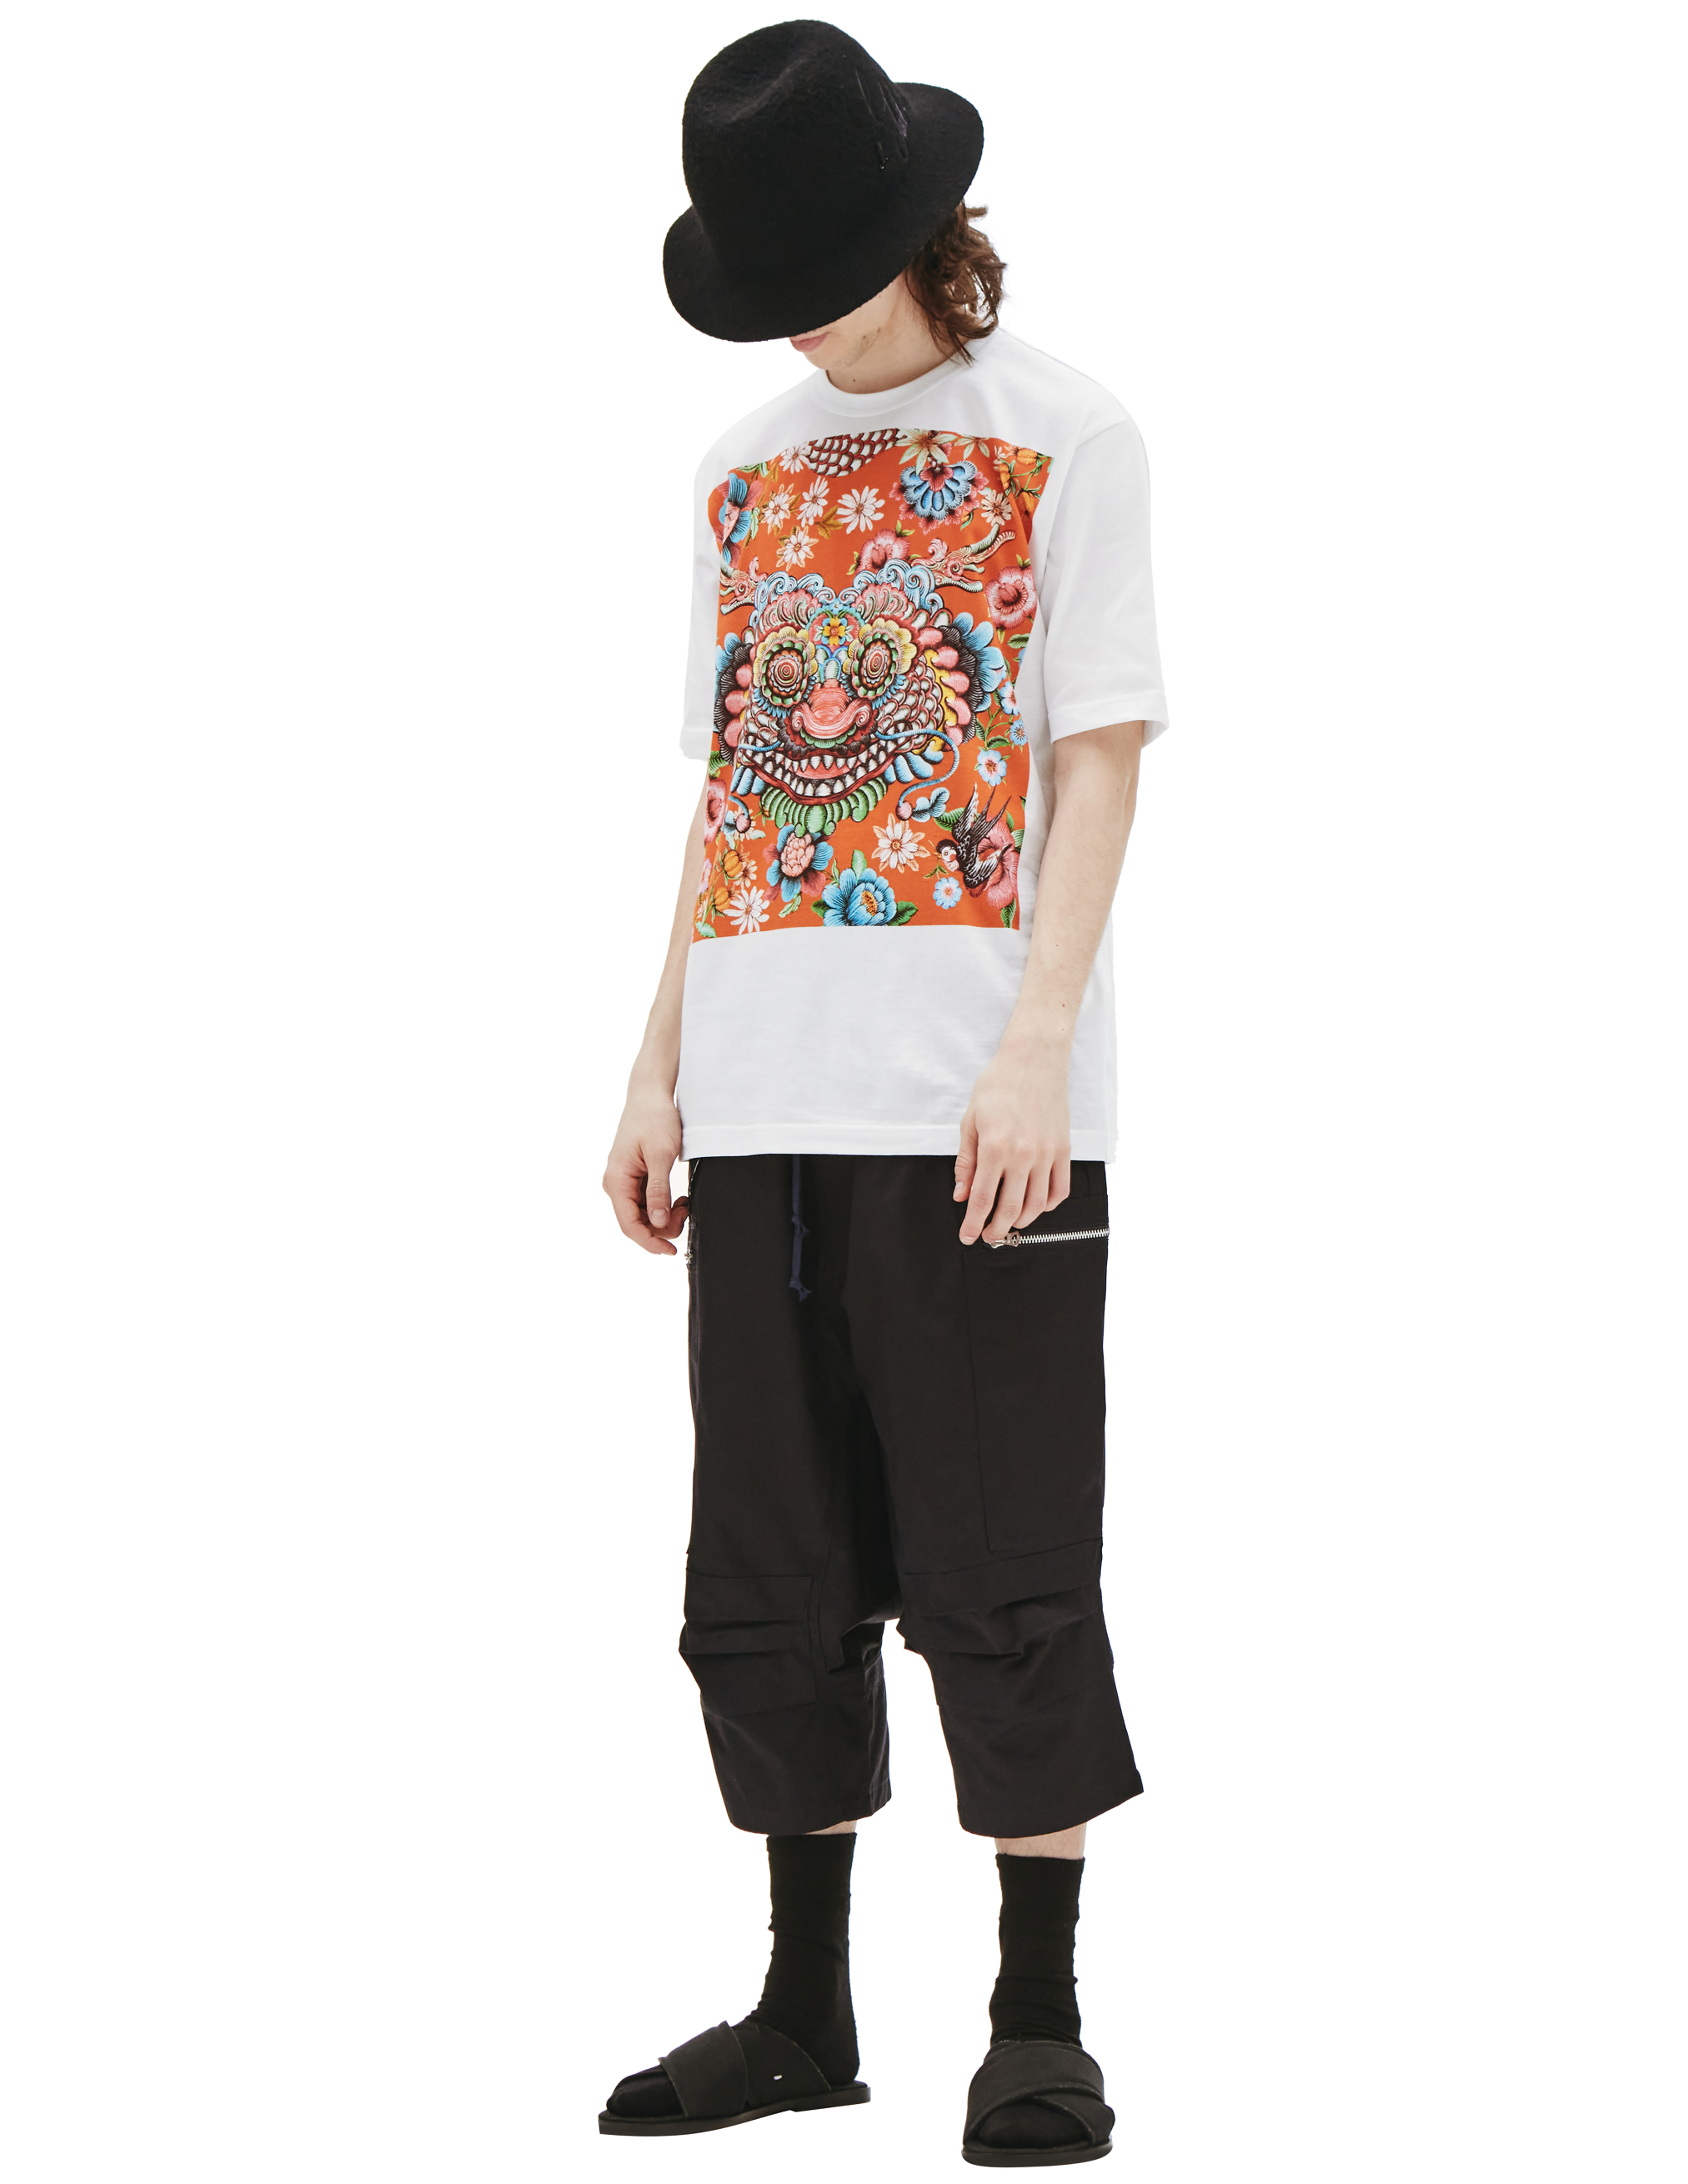 Хлопковая футболка с принтом дракона Junya Watanabe WI-T005-051-1, размер XL;L